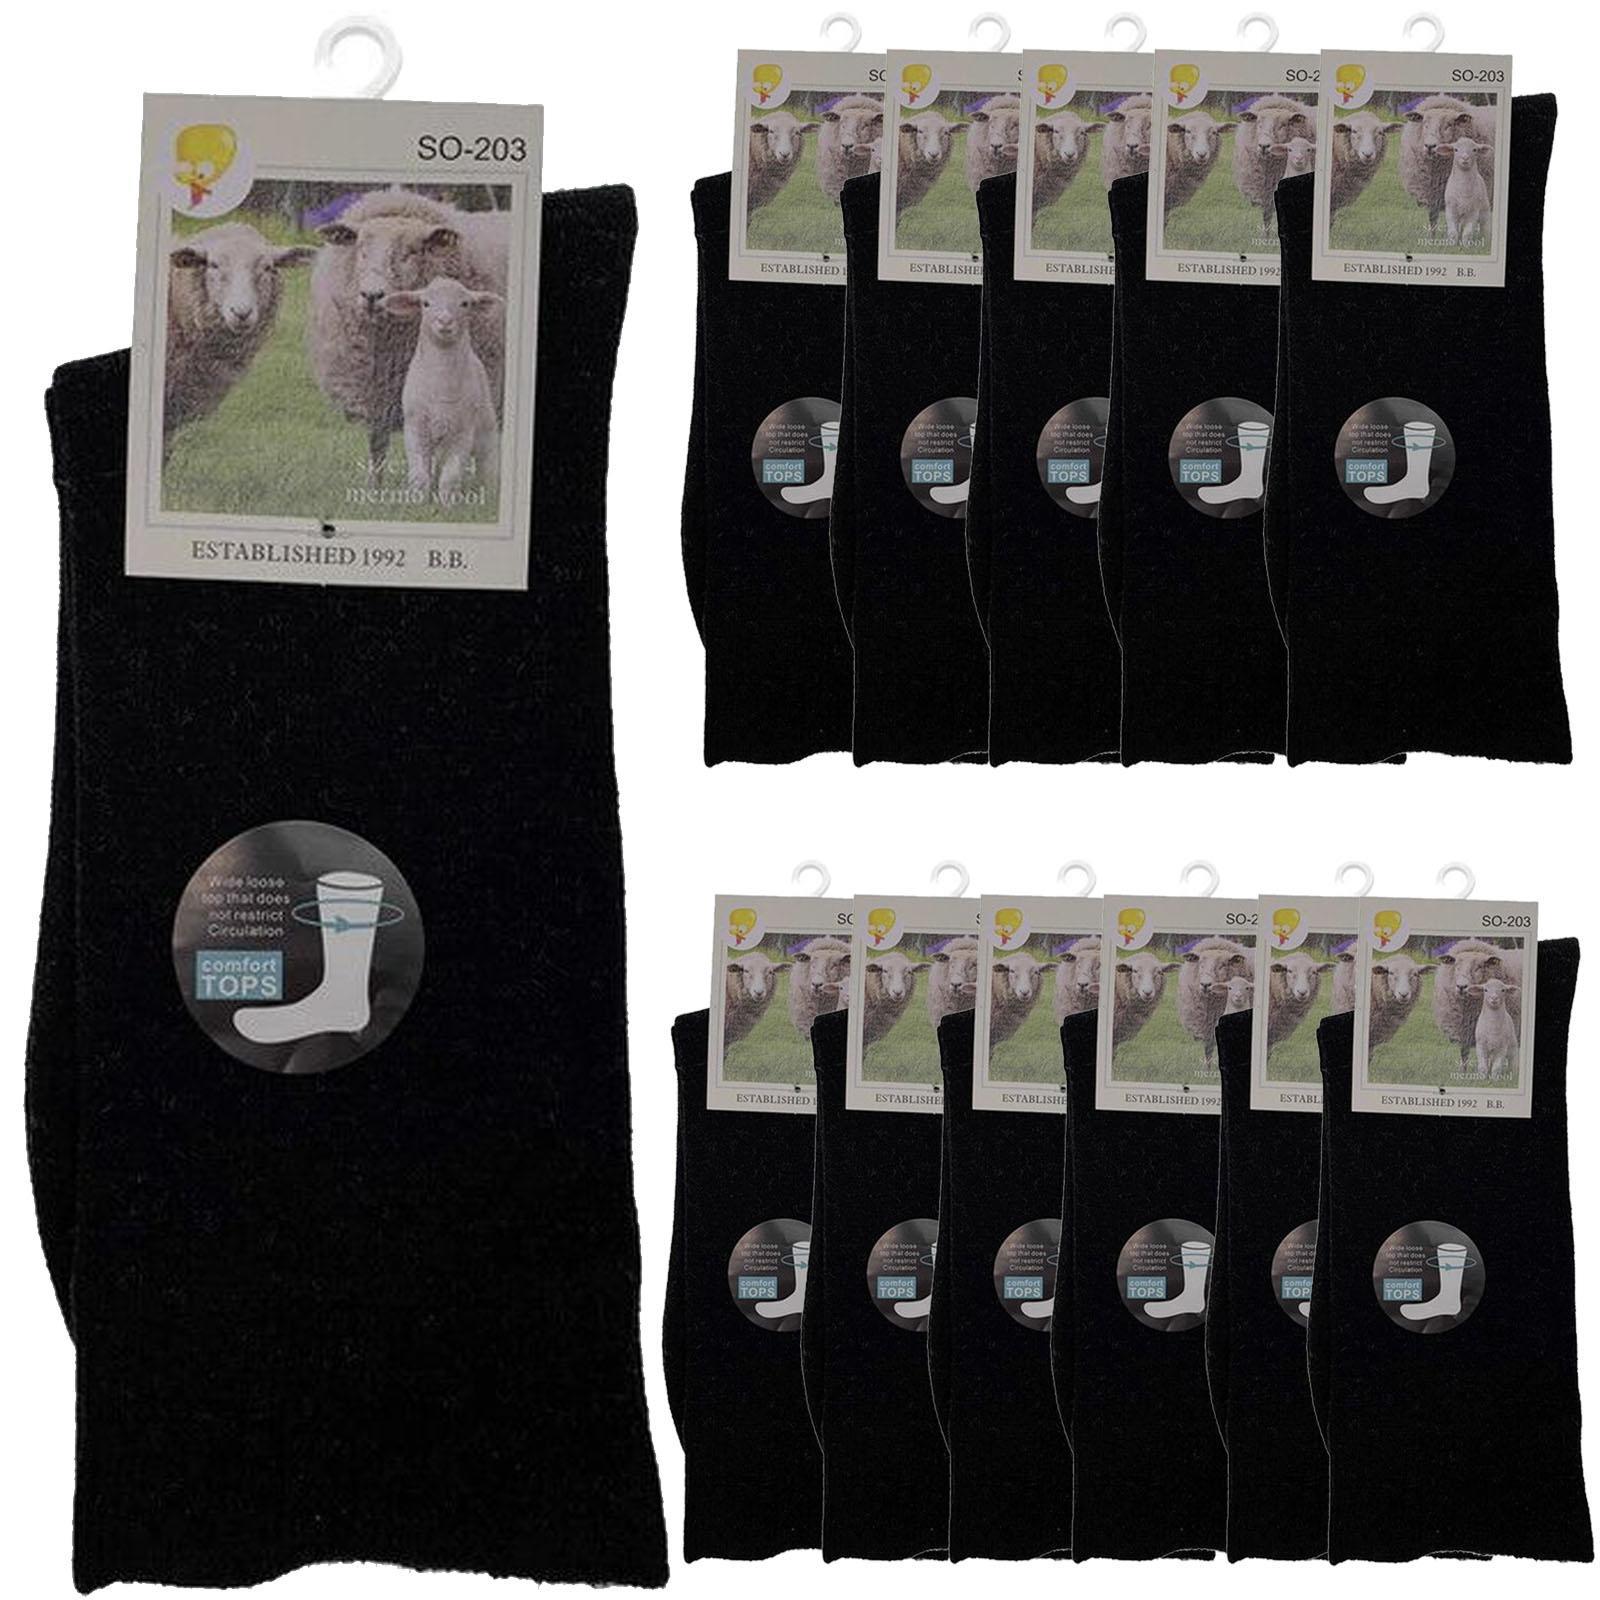 Merino Wool Mens Loose Top Thermal Socks Diabetic Comfort Circulation - 12 Pairs - Black - 2-8